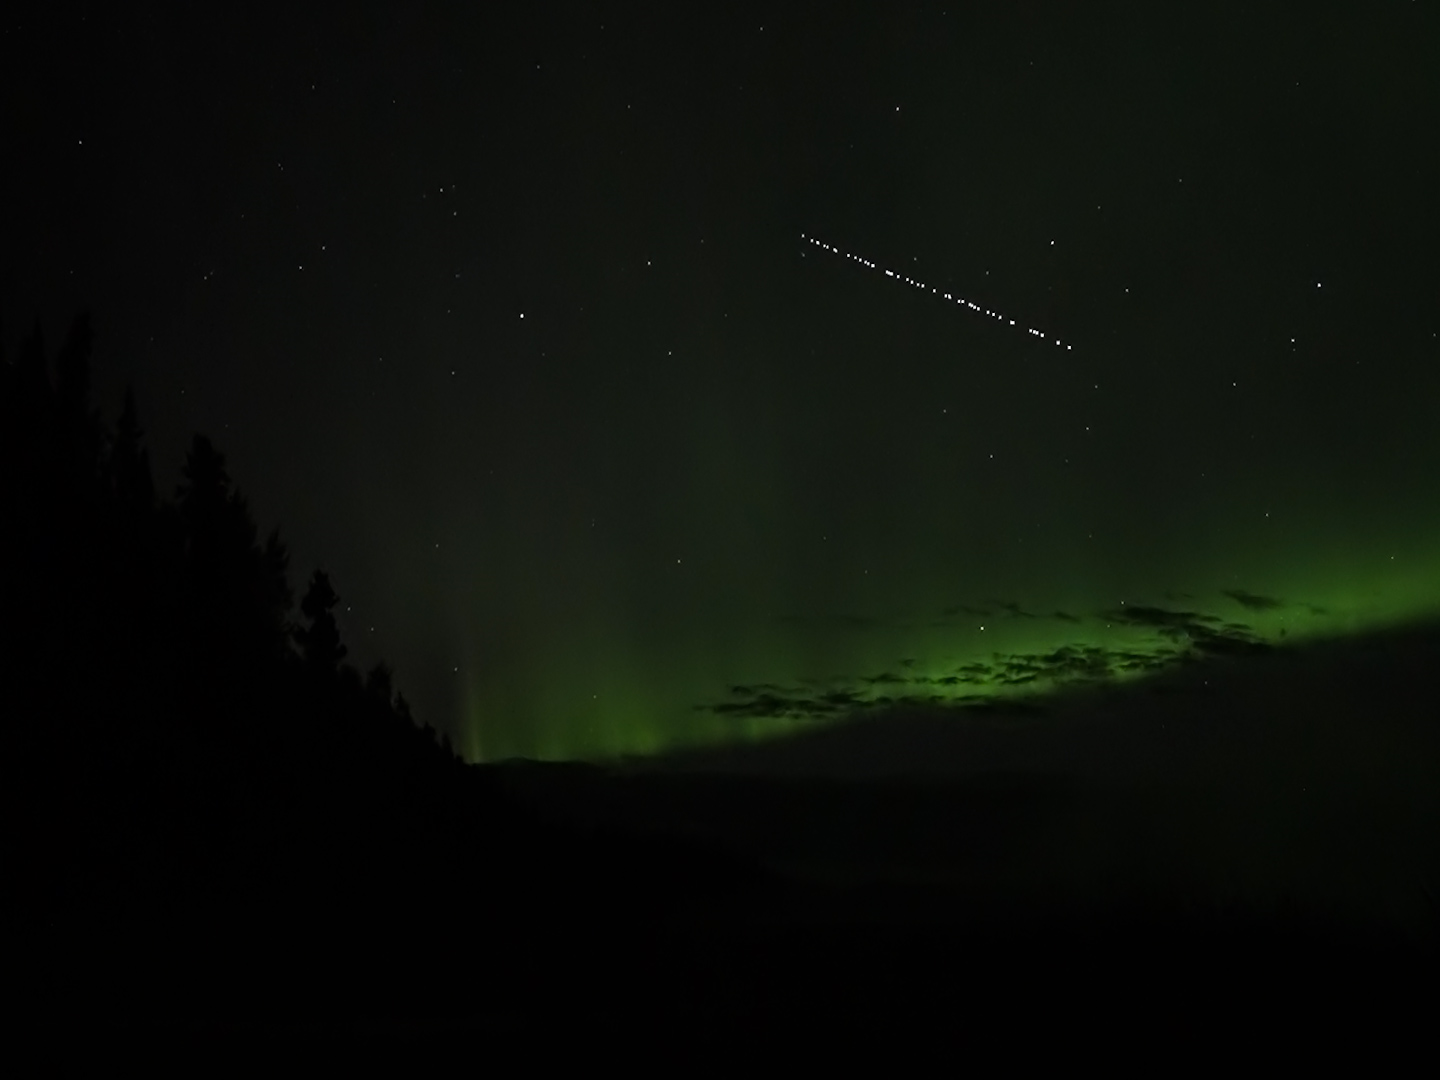 Цепочка спутников системы Starlink с Земли -- одно из явлений, которое можно увидеть на небе. Фото: Washington Post